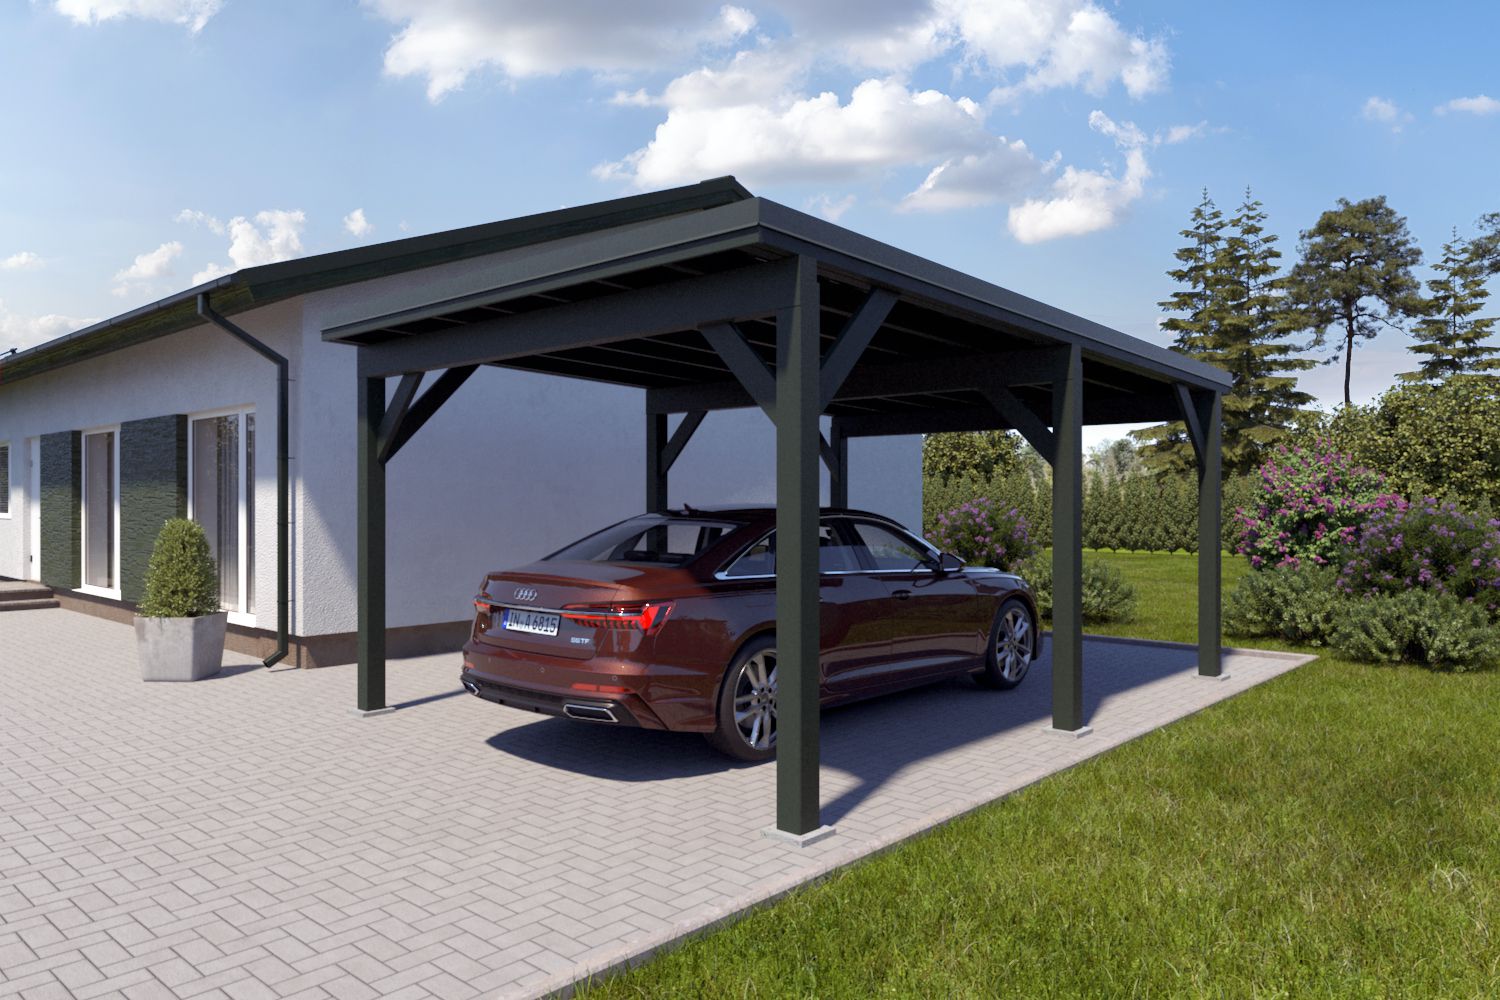 Enkele carport "Stable" 6 x 4 m (LxB) / 250 kg/m² dak belasting / 24 m² / Chroomoxidegroen met doorngroen metaalprofielen metalen dak